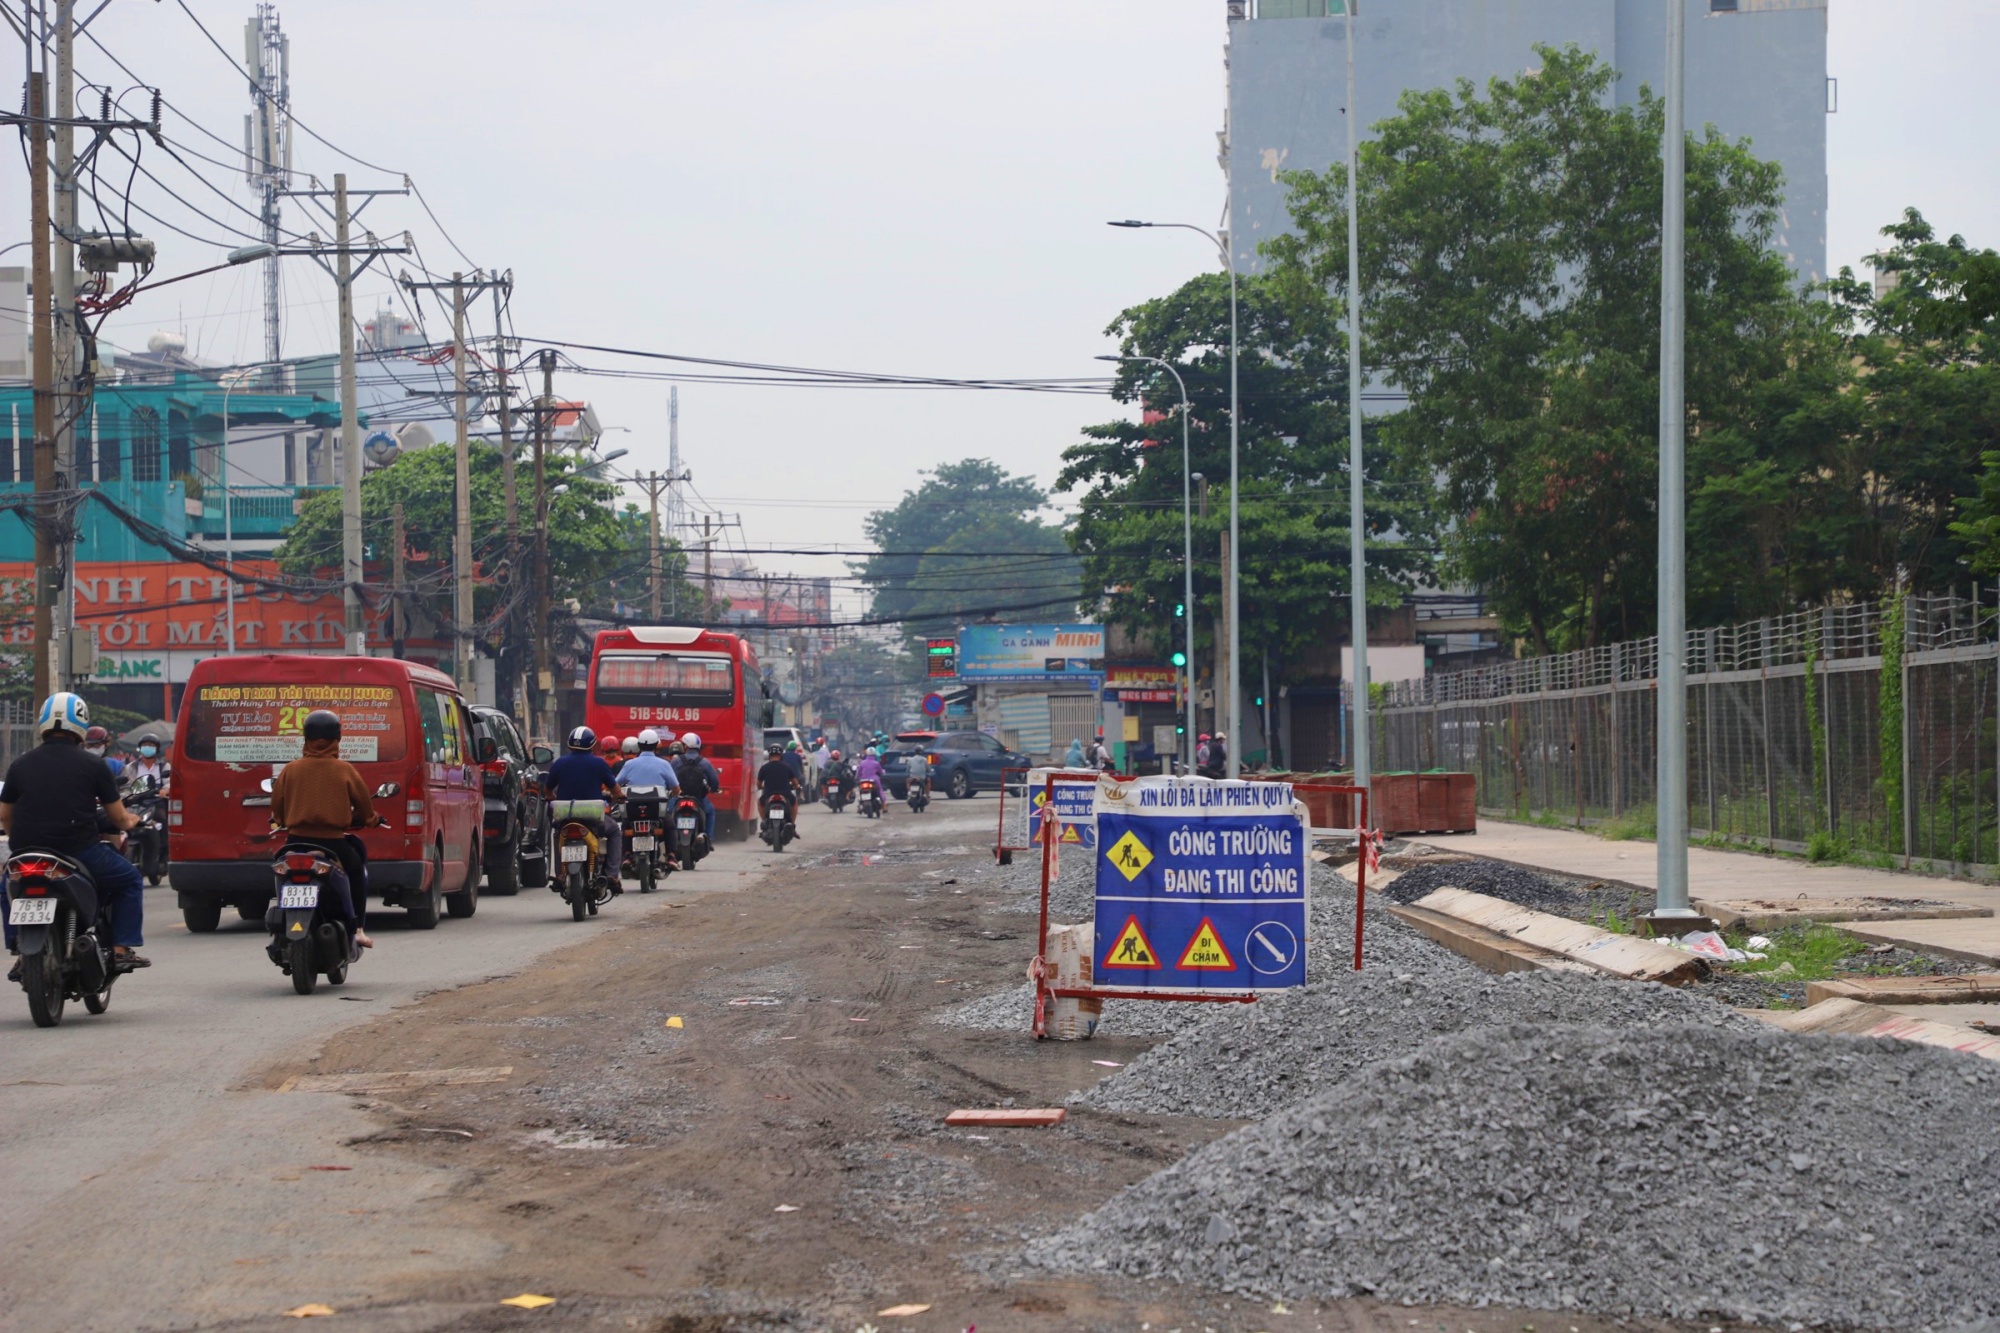 Hiện trạng đường kết nối sân bay Tân Sơn Nhất sau hơn 1 năm thi công mở rộng - Ảnh 3.